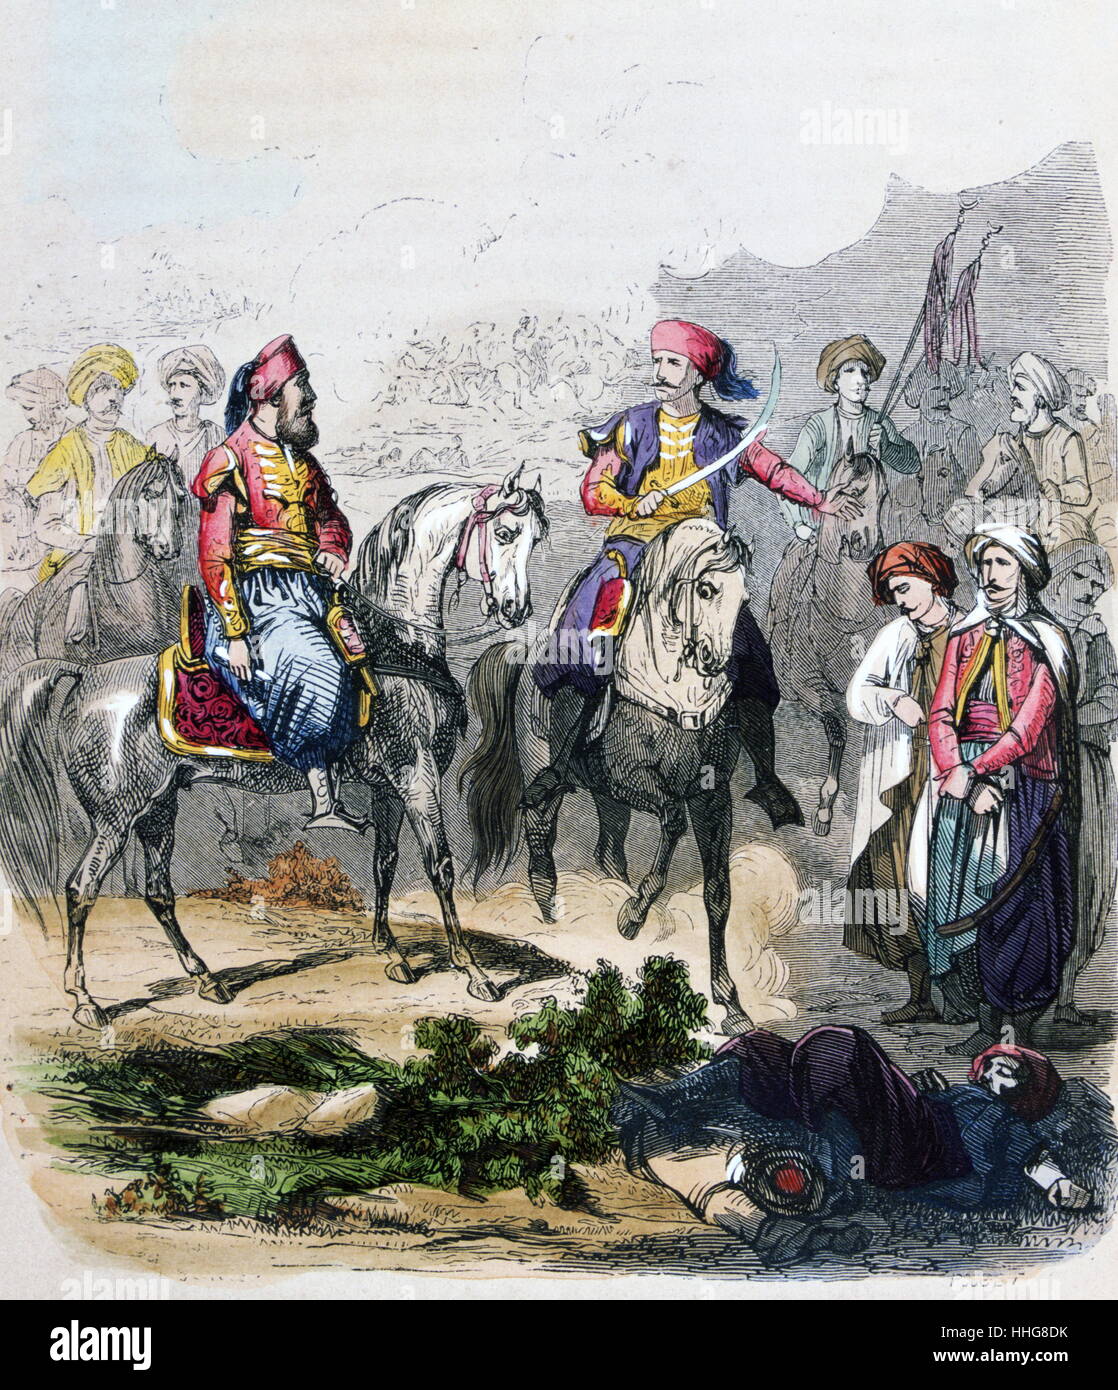 Die Schlacht von nezib Juni 24, 1839, zwischen Ägypten und dem Osmanischen Reich. Die Ägypter waren von Ibrahim Pasha geführt. Aquarell von der französische Maler Jean-Adolphe Beaucé (1818 - 1875). Stockfoto